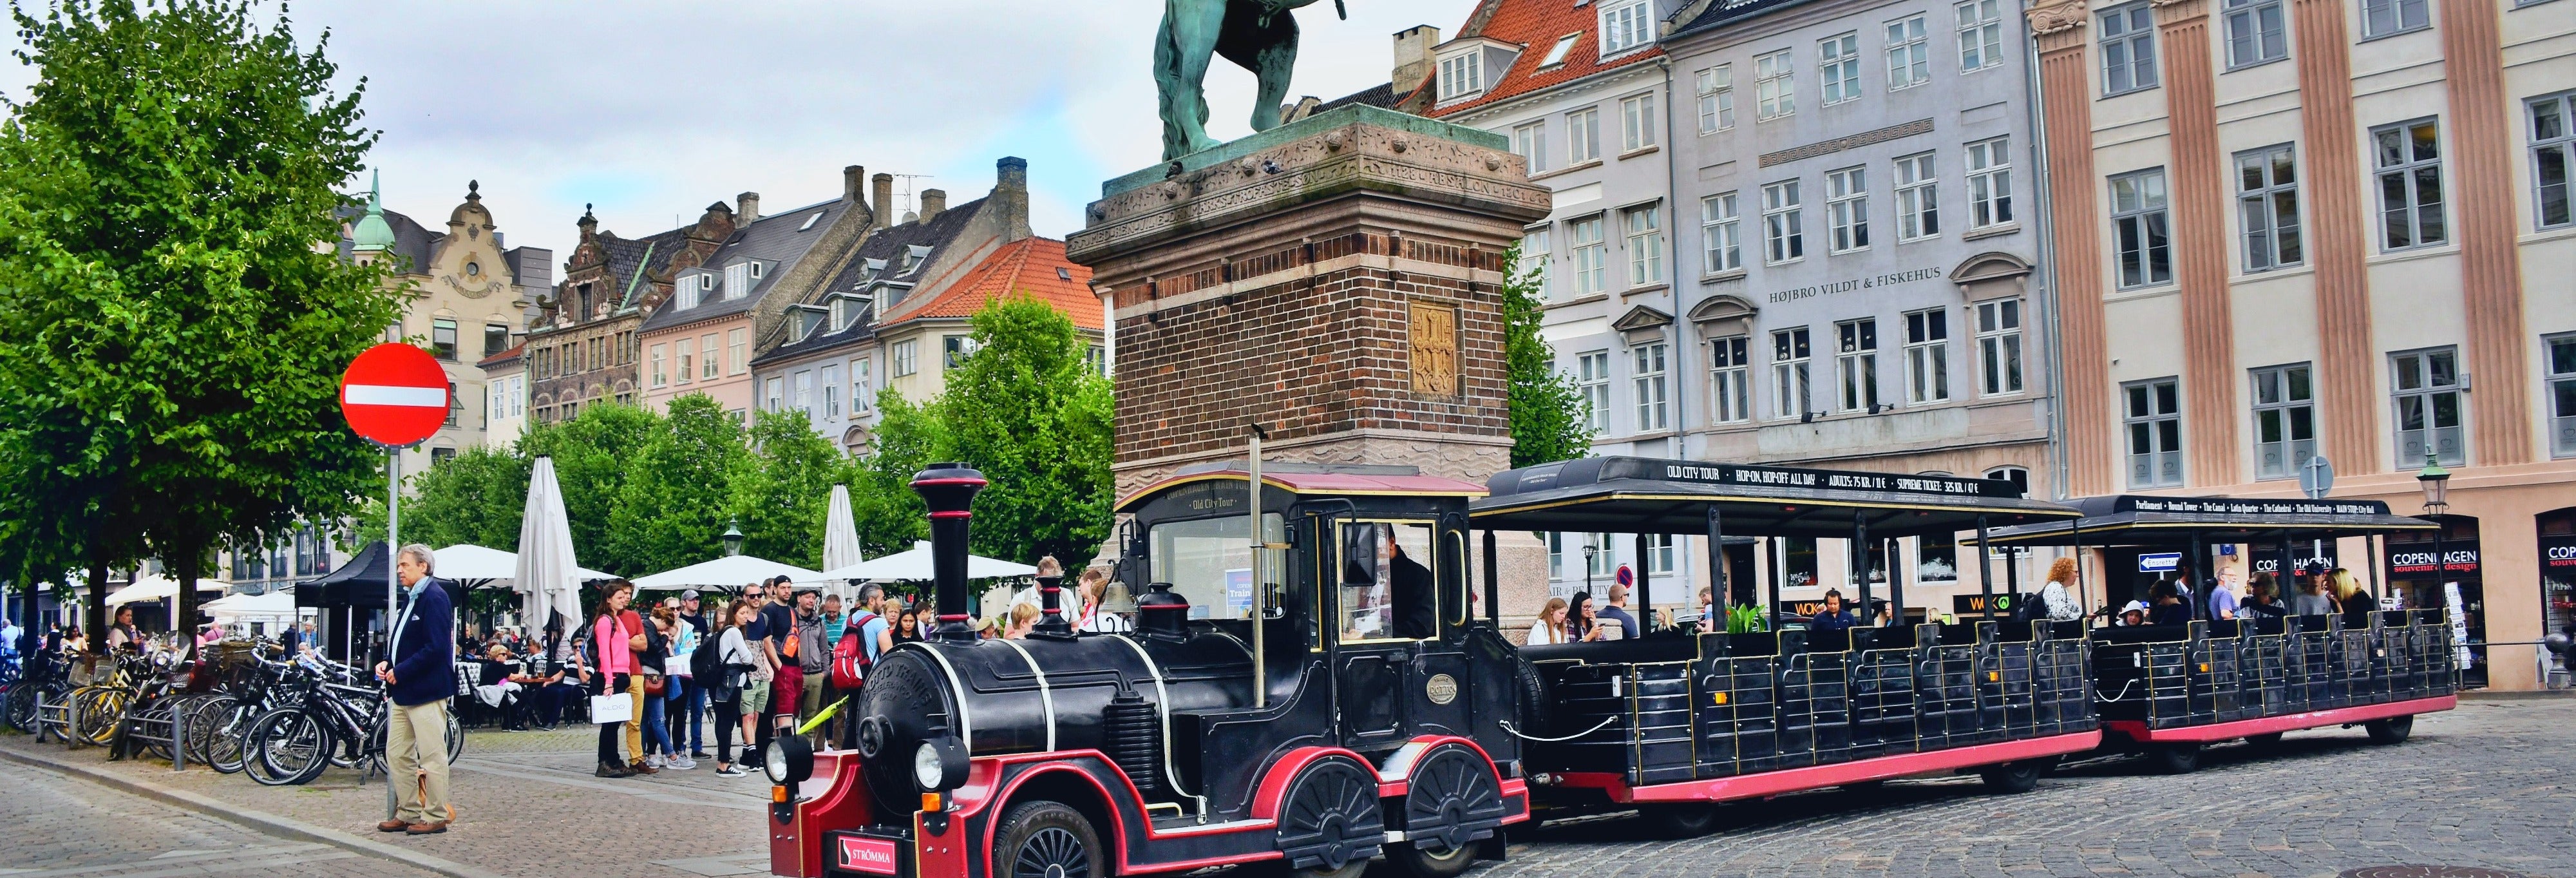 Trem turístico de Copenhague